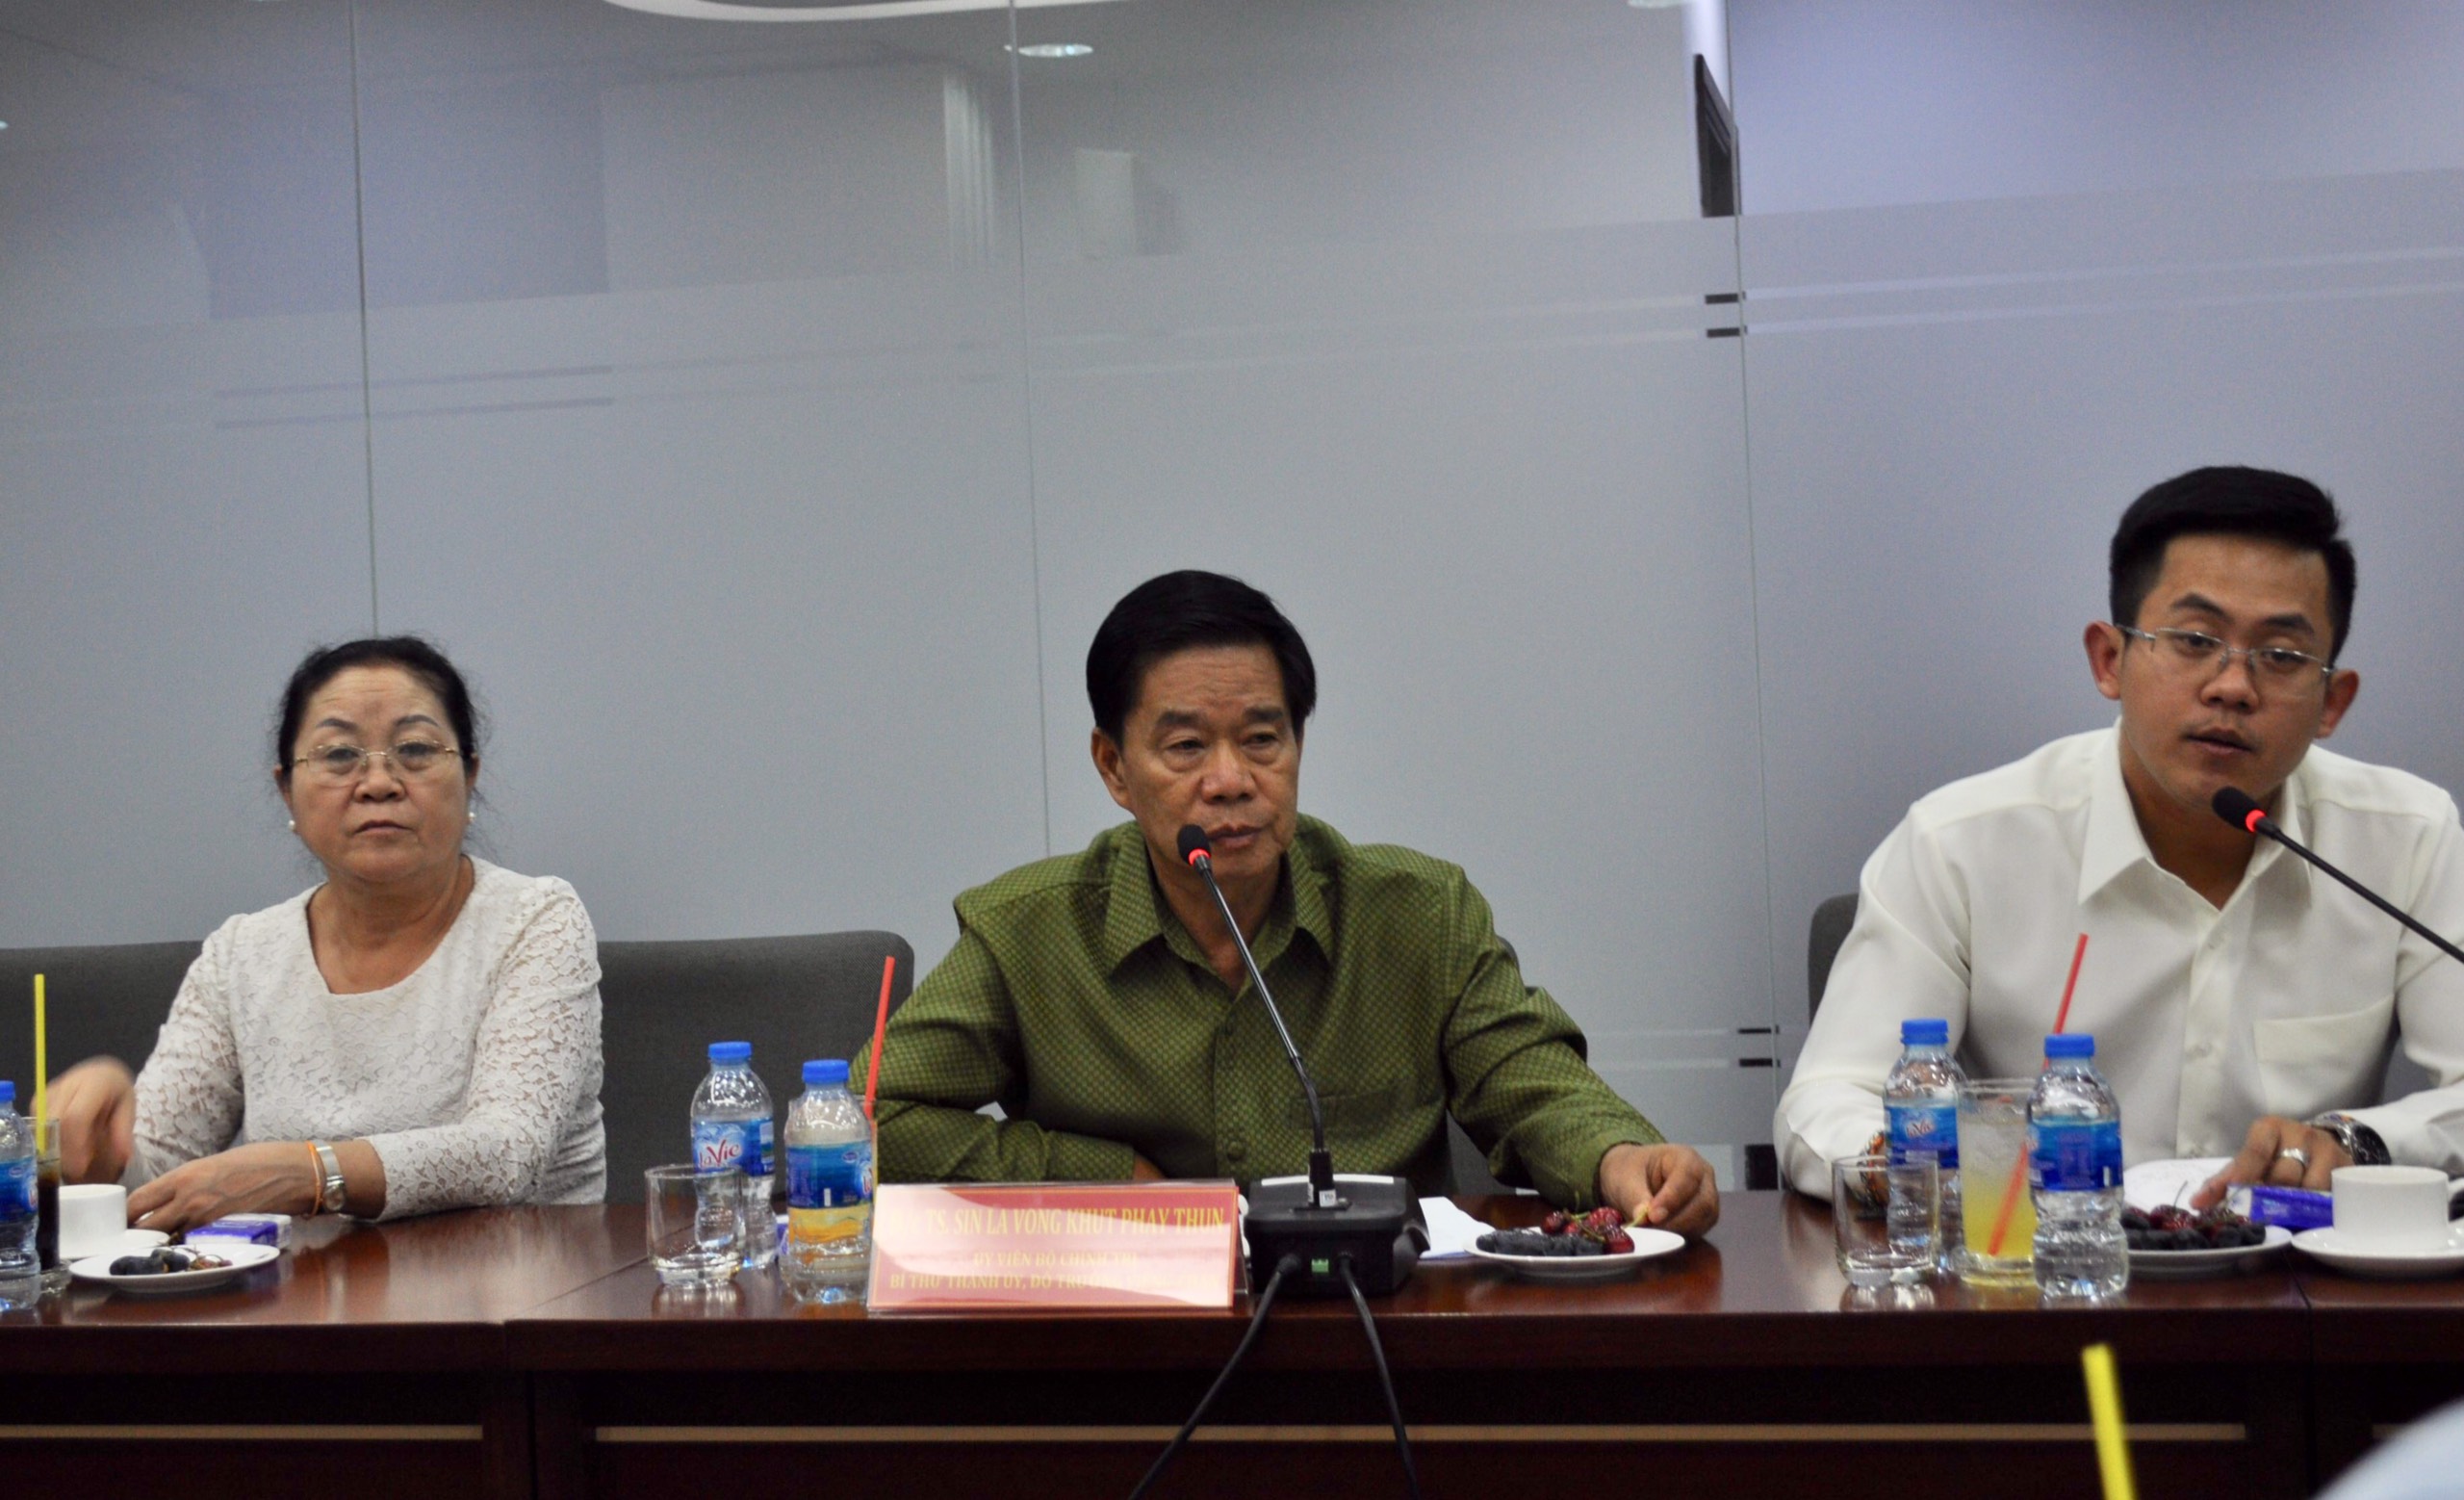 Đồng chí Sinlavon Khoutphaythoume – UV Bộ Chính trị Đảng Nhân dân Cách mạng Lào, Bí thư, Đô trưởng Thủ đô Viêng Chăn (giữa) đánh giá cao các dự án của VRG tại Lào